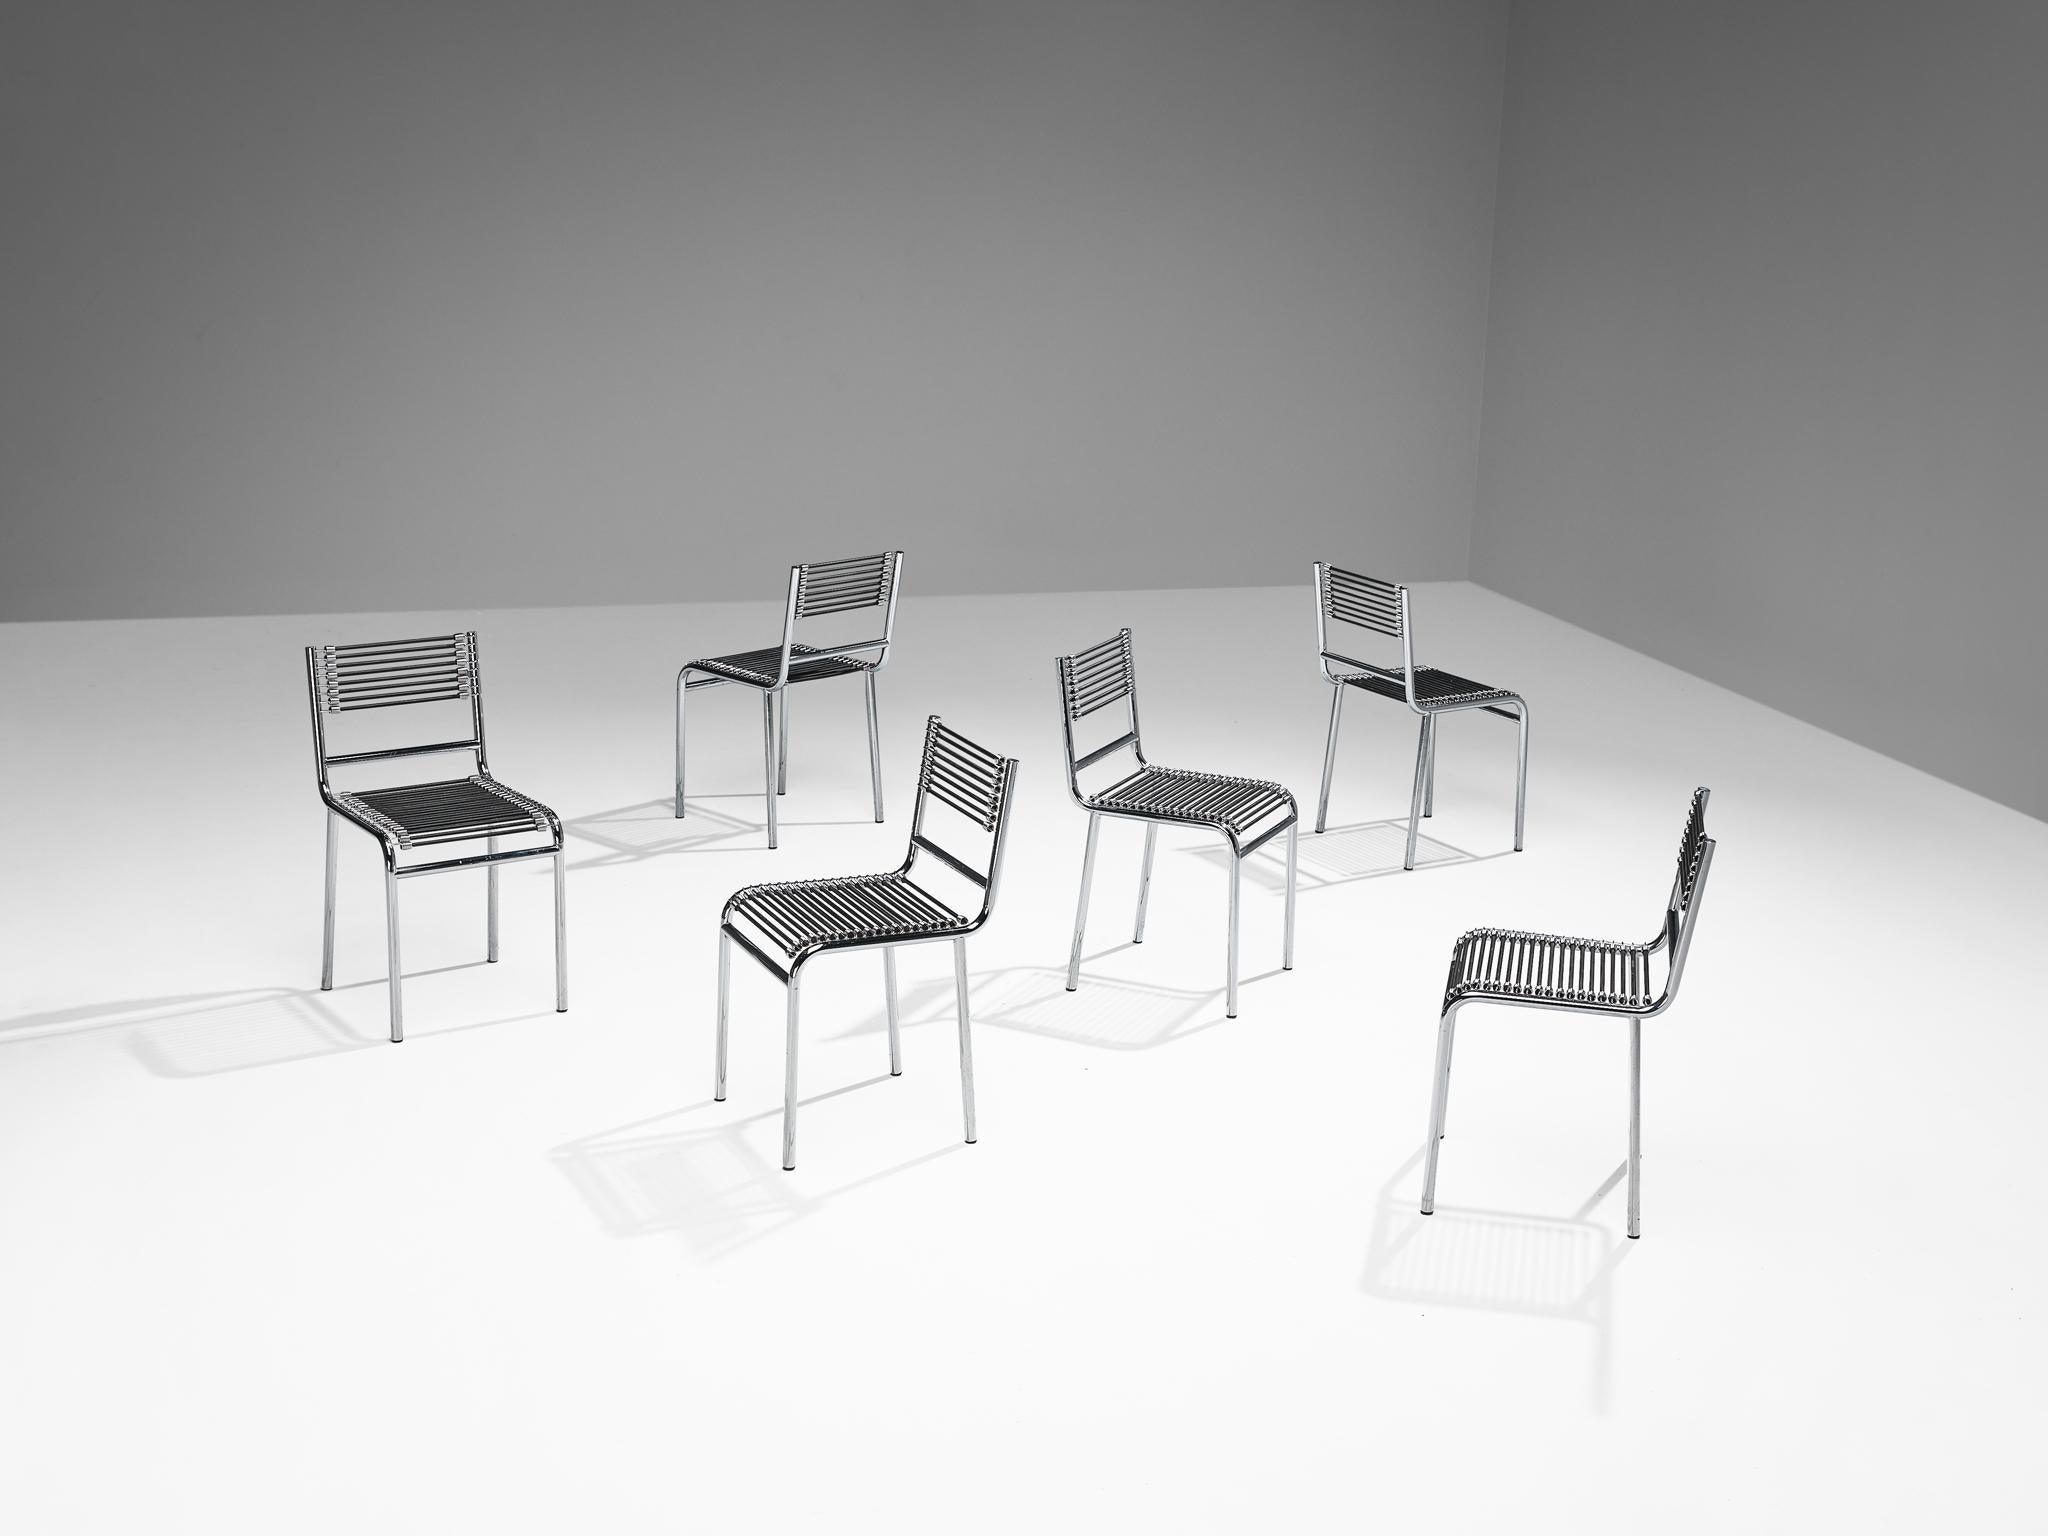 René Herbst, chaises 'Sandows', modèle '101', acier chromé, corde élastique, France, design 1928, produit dans les années 1970.

La chaise 'Steele' incarne les avancées industrielles des années 20, avec une construction en acier tubulaire intégrée à